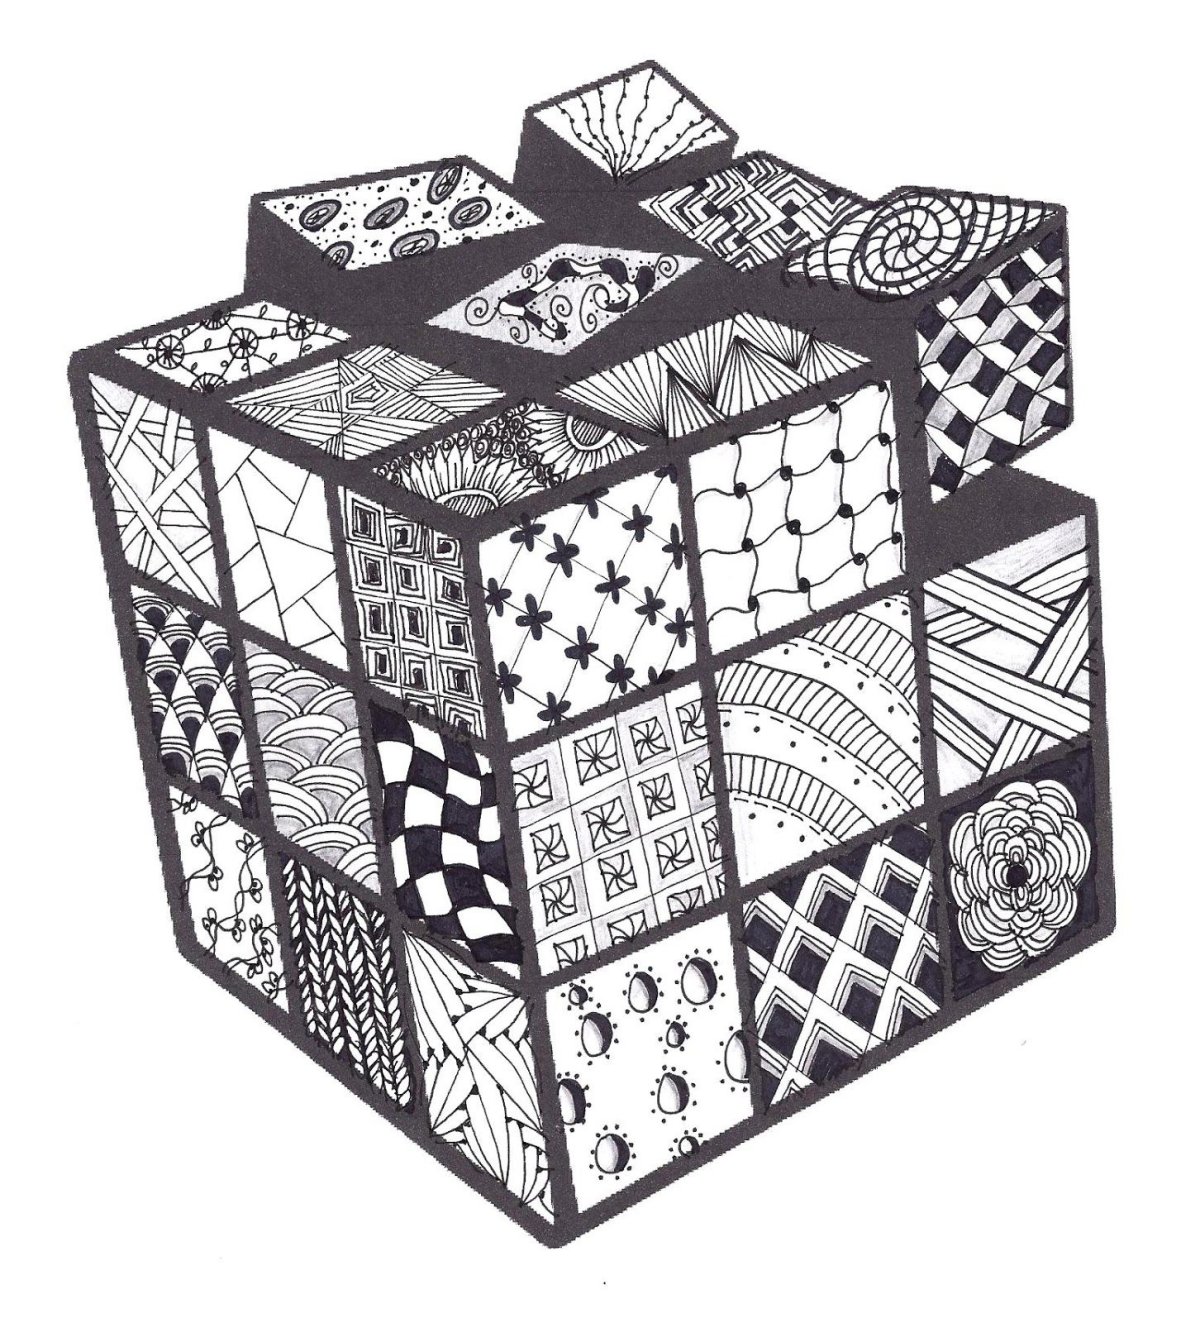 Узоры на кубике